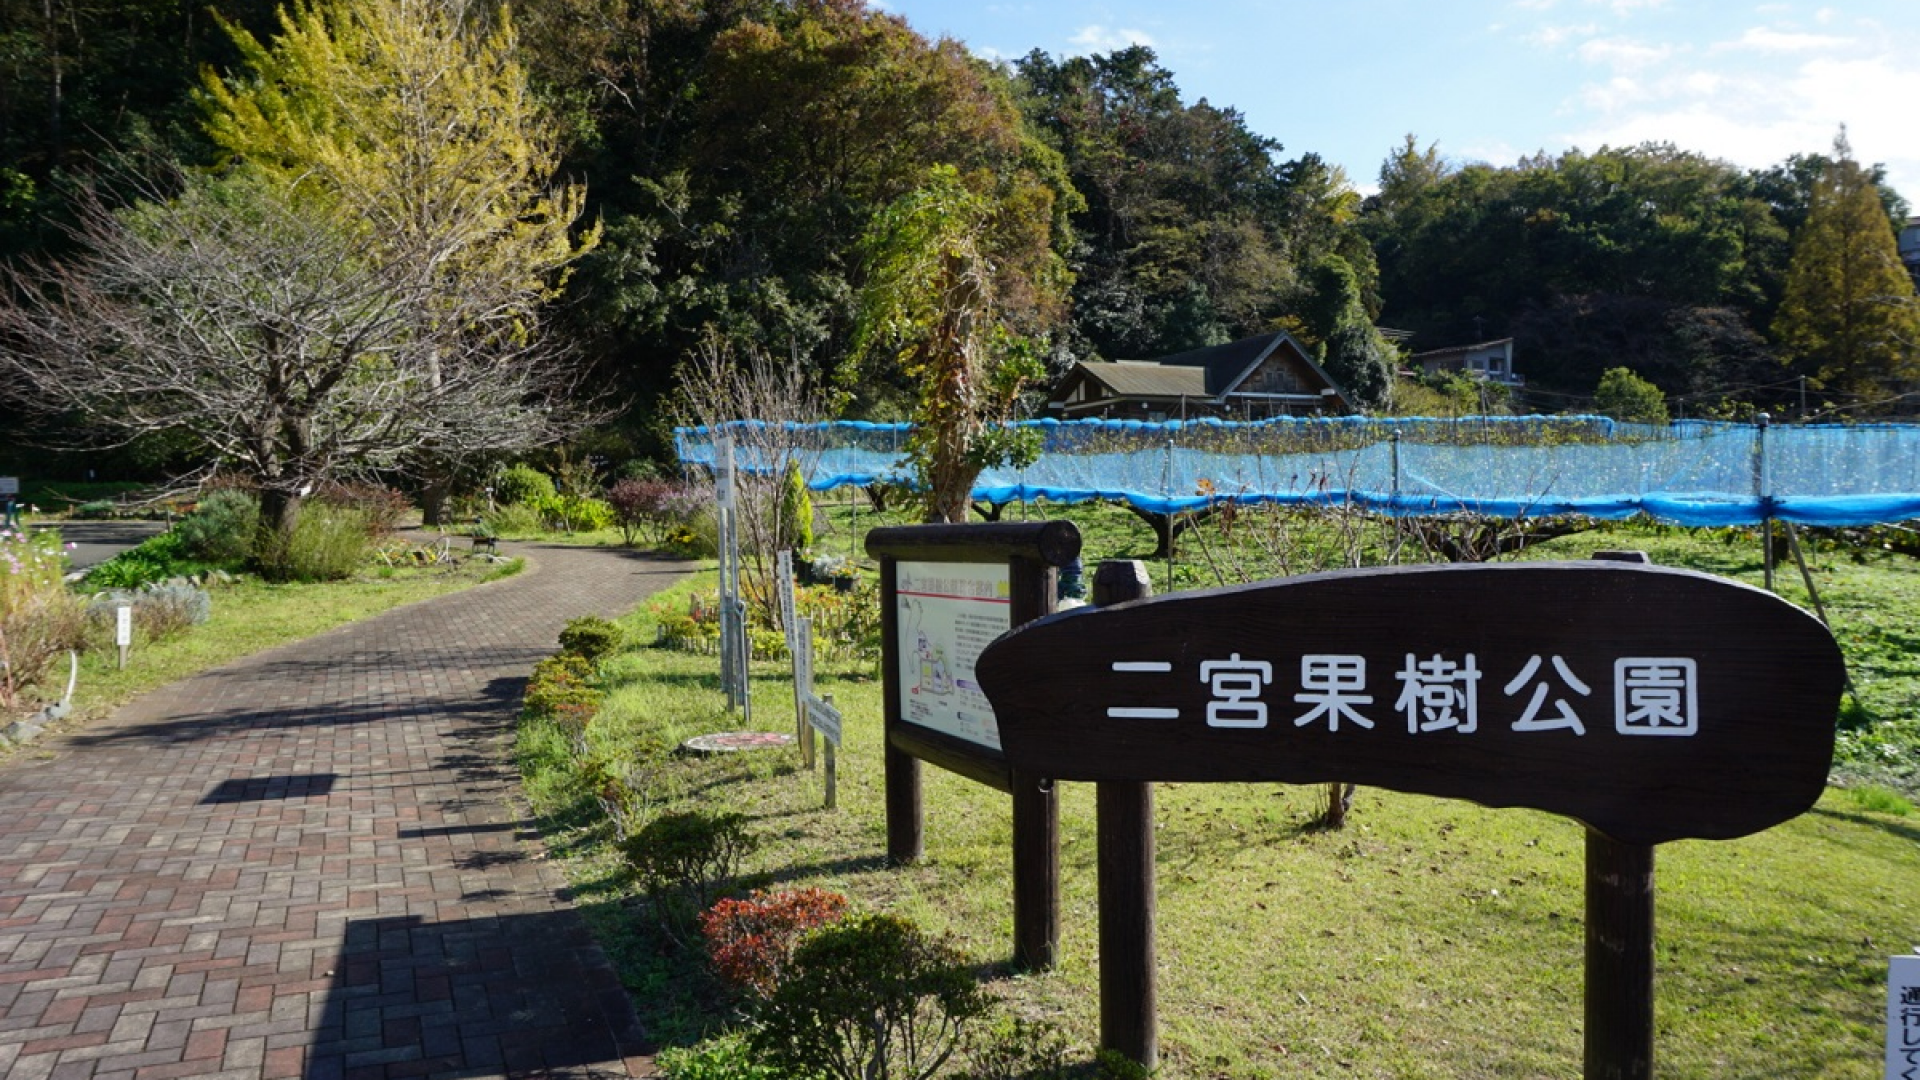 Parque del Huerto de Ninomiya